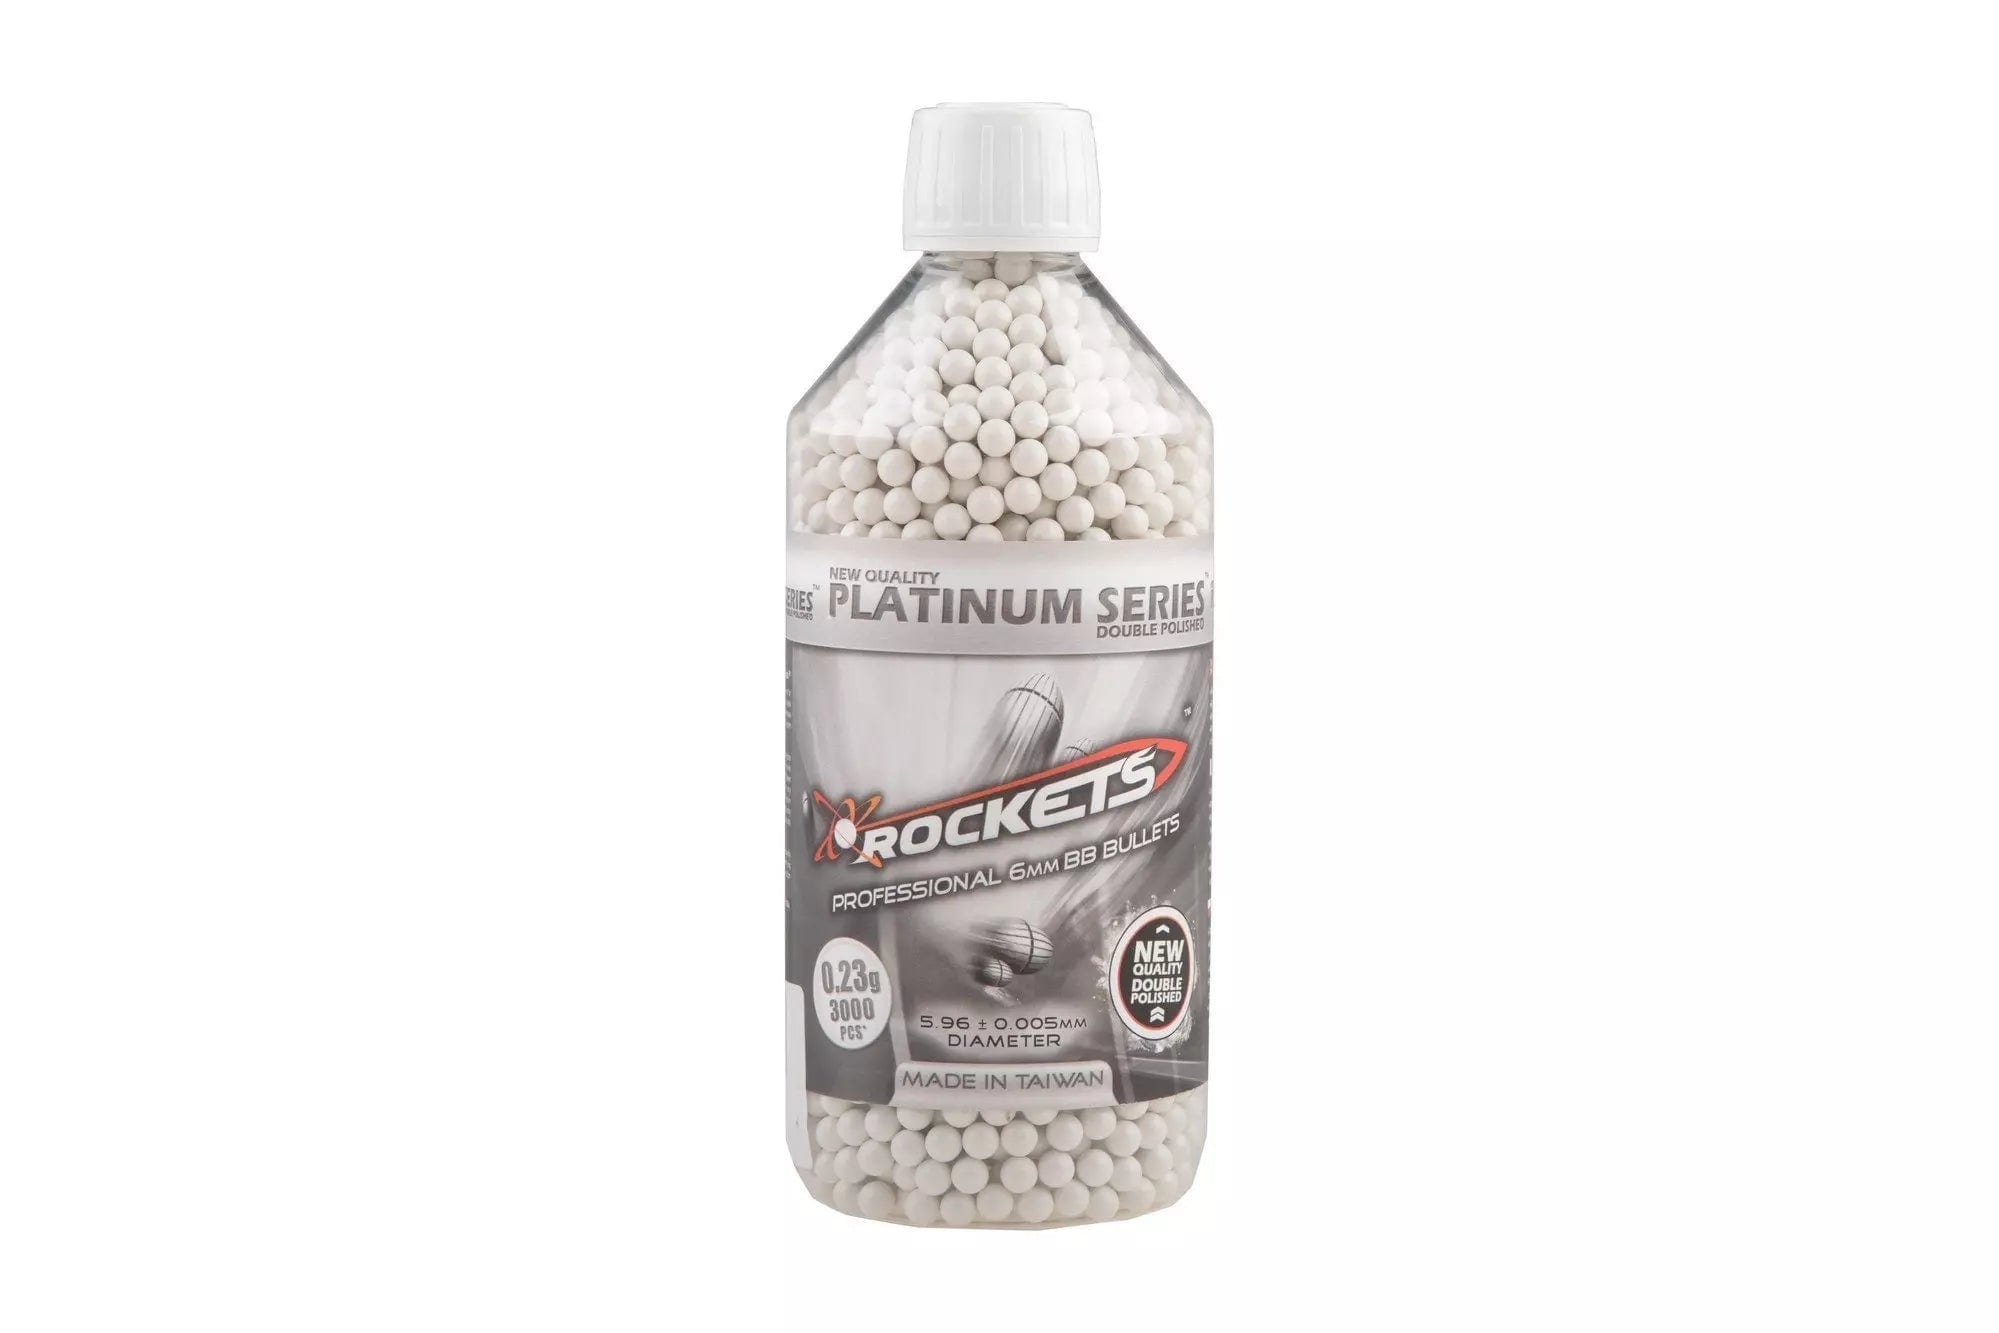 Rockets Platinum Series 0.23g BB pellets - 3000pcs bottle